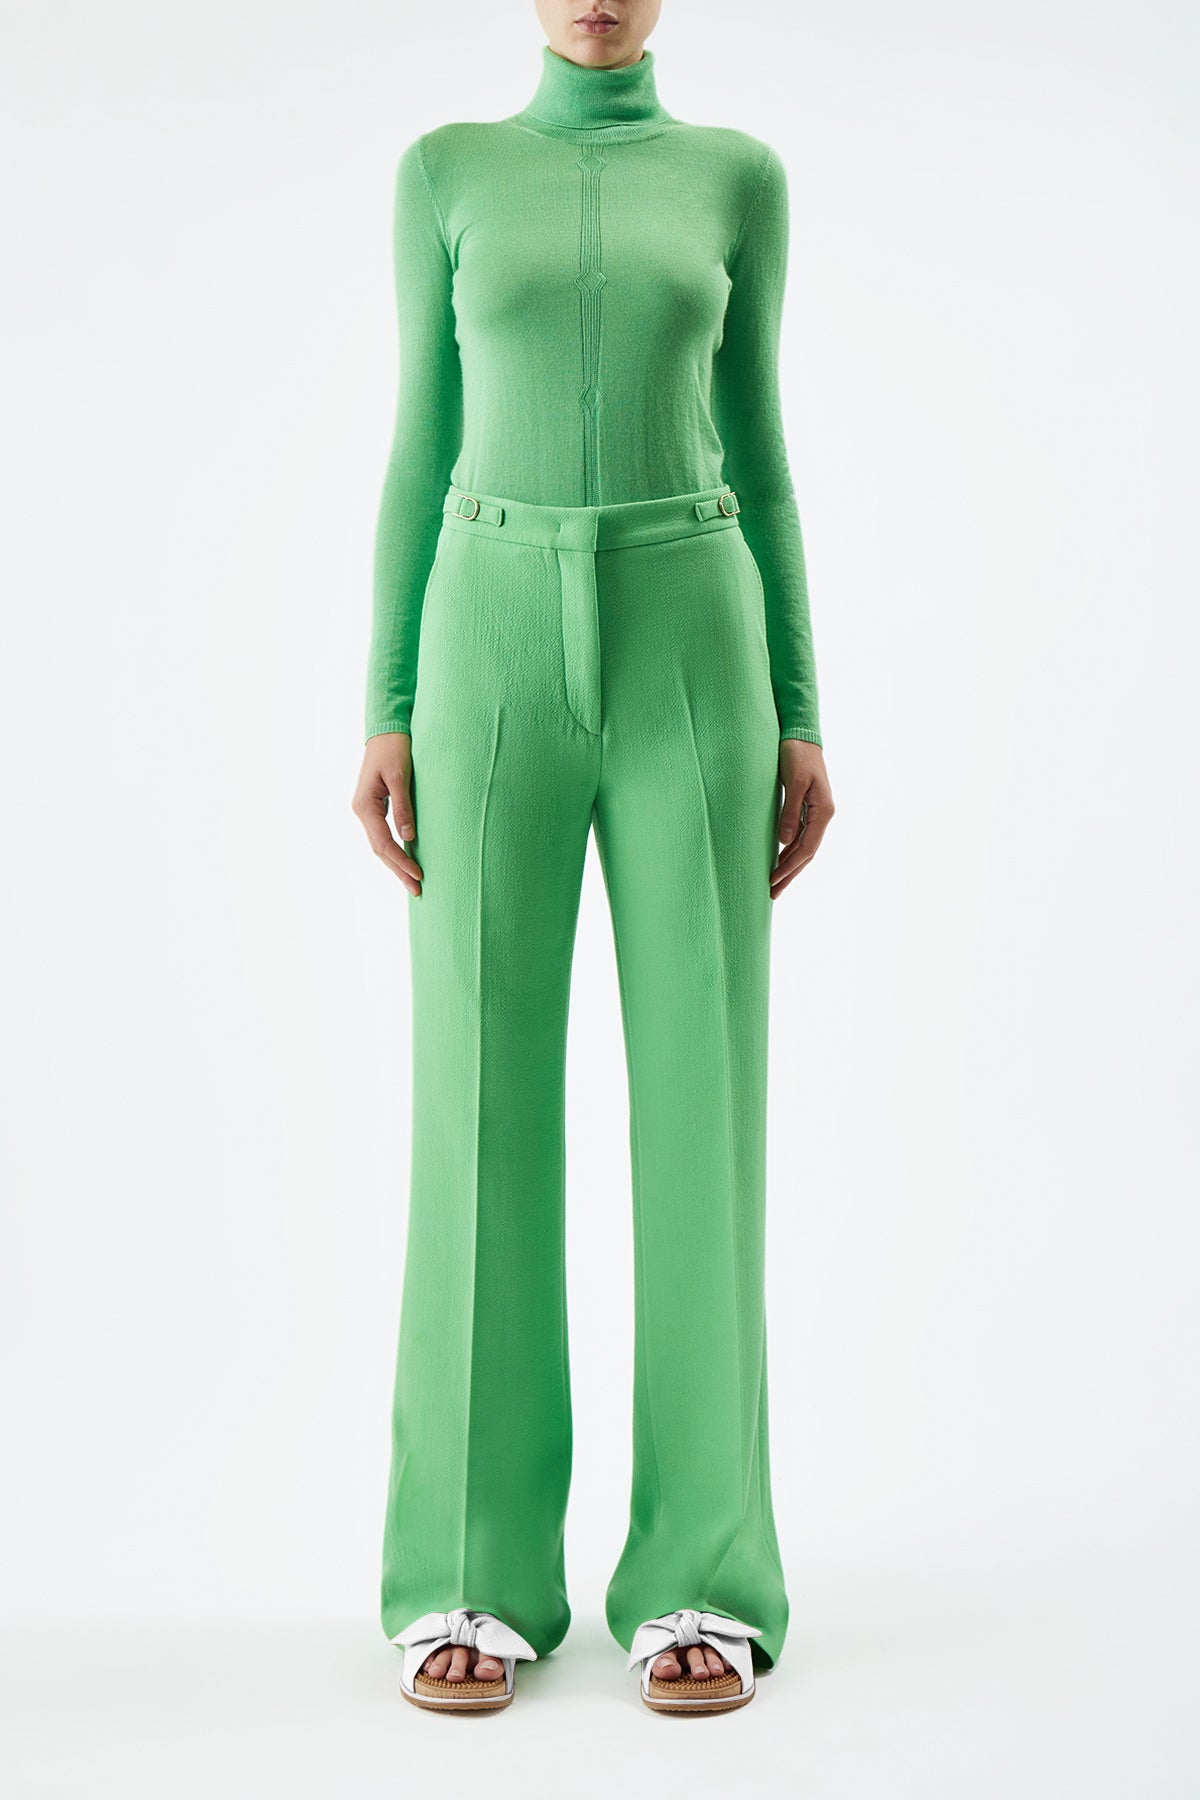 Steinem Turtleneck in Fluorescent Green Silk Cashmere